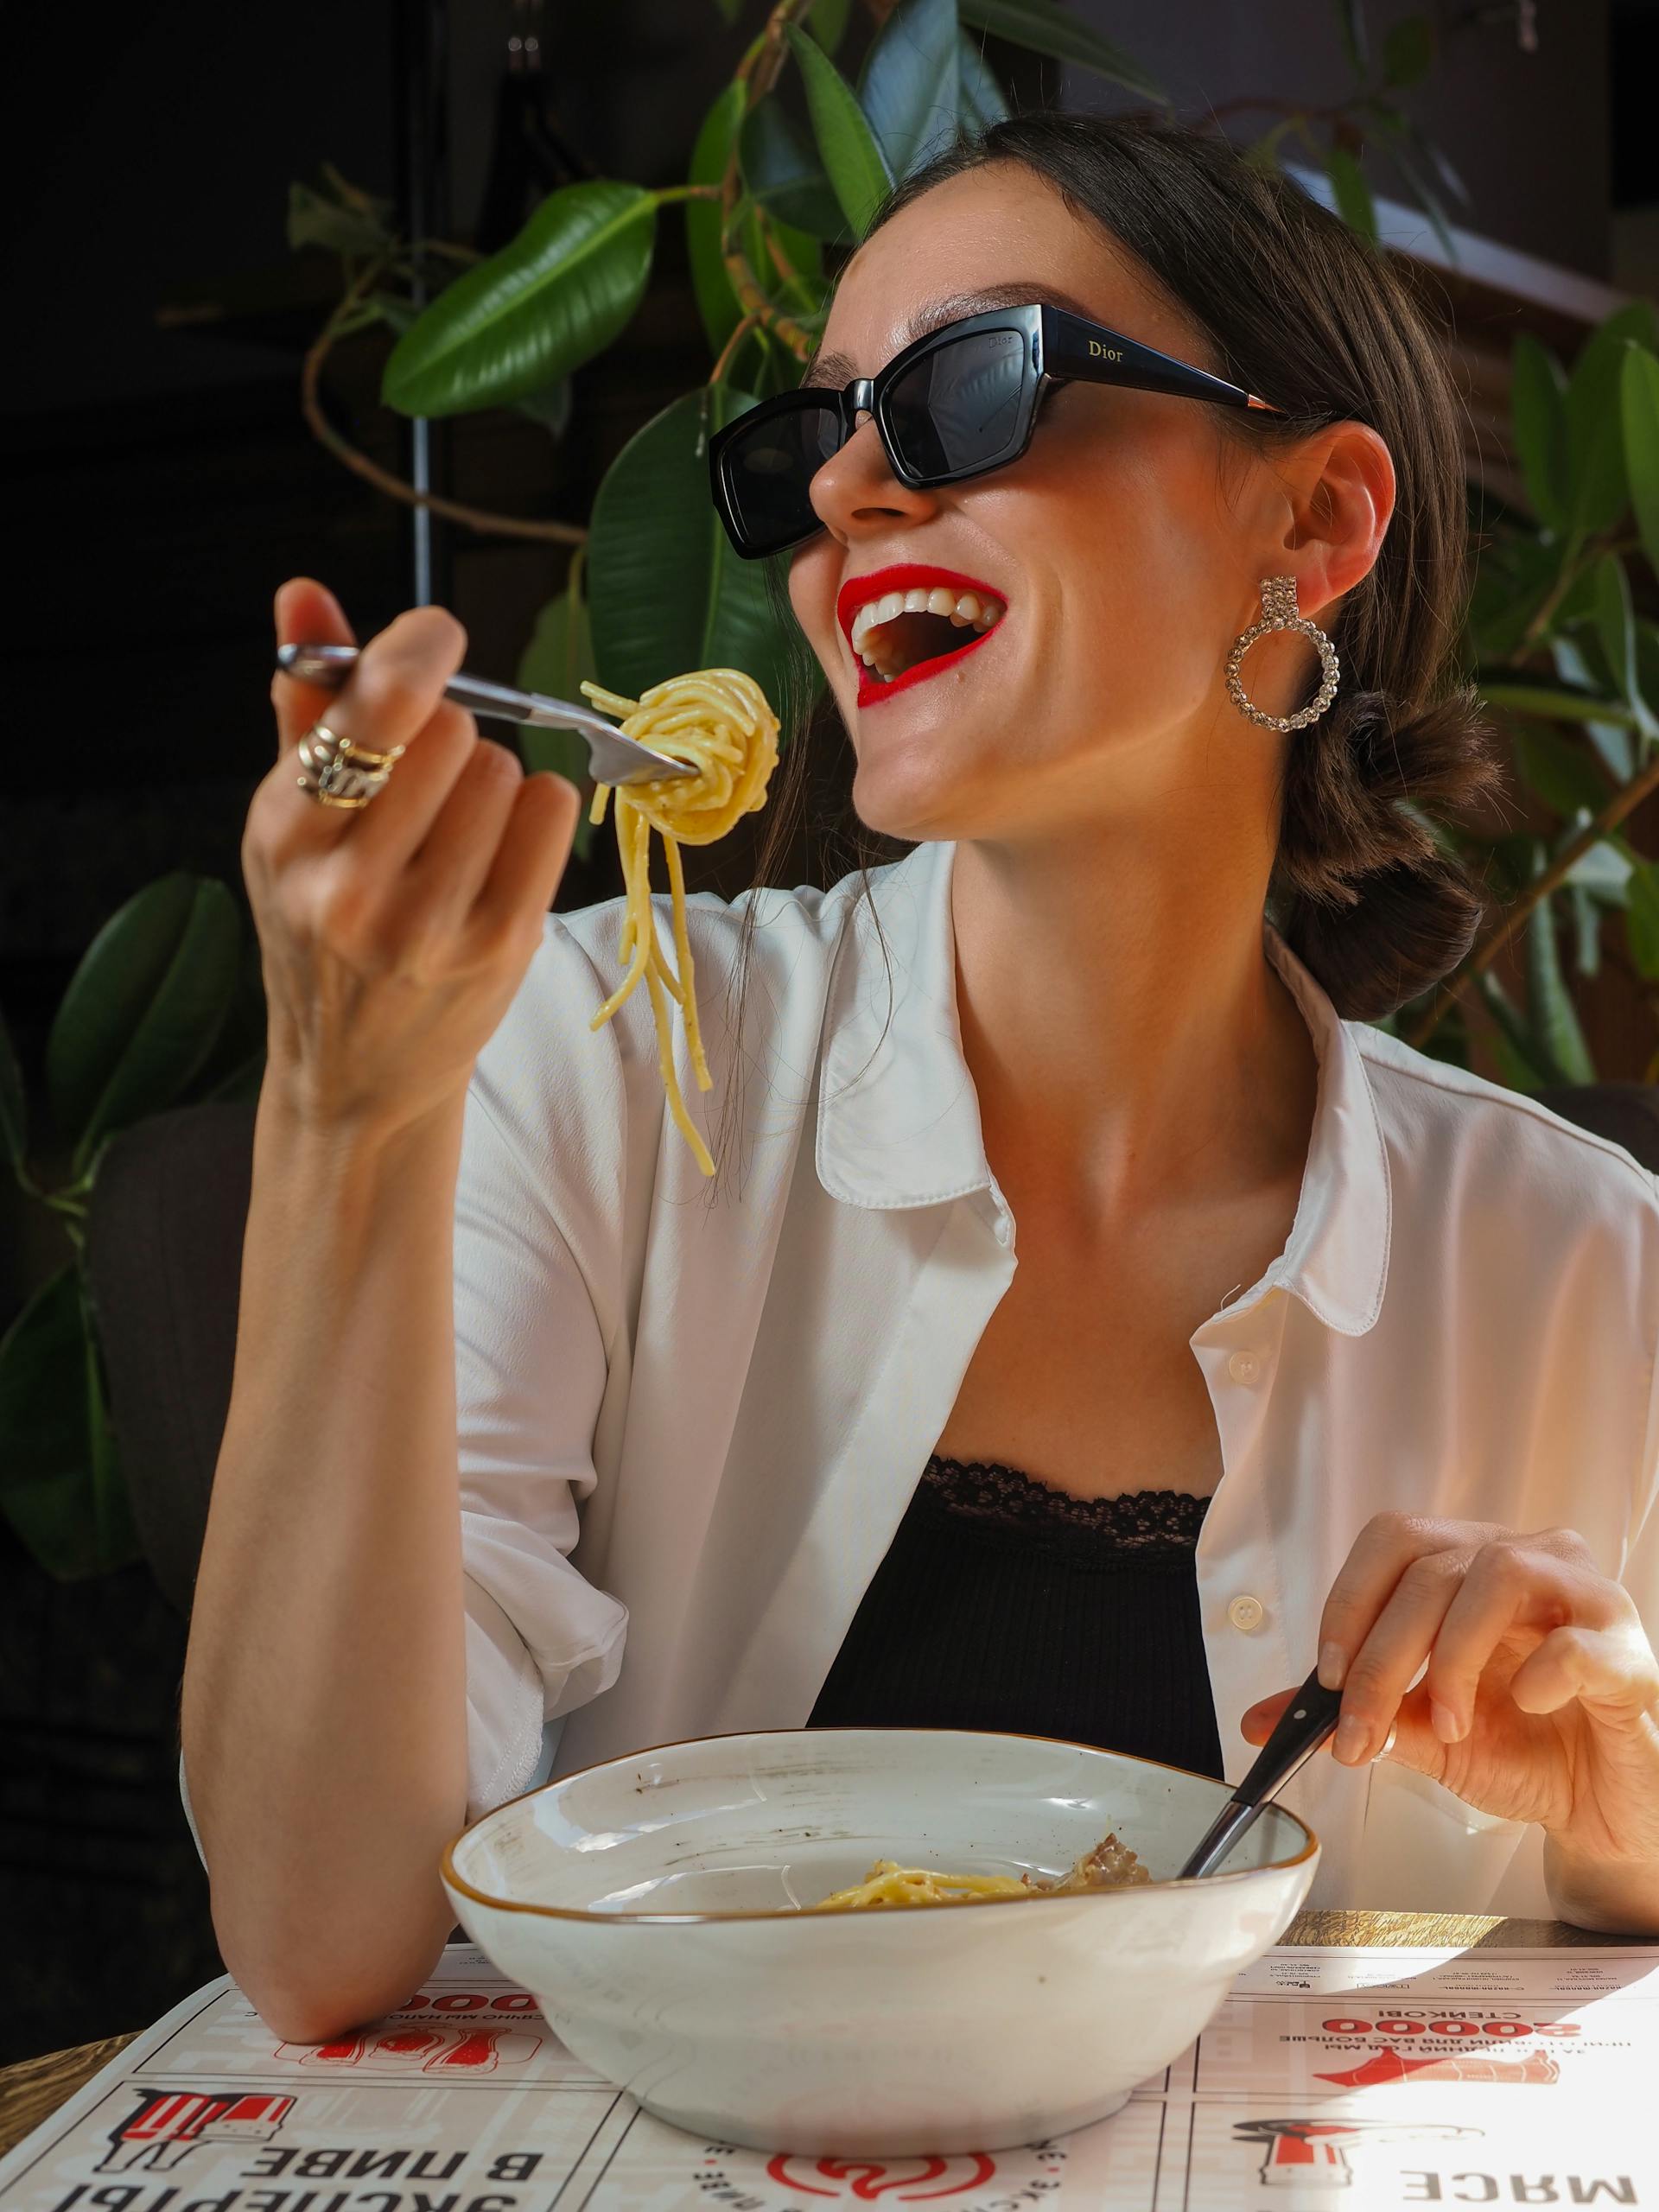 Femme souriante mangeant dans un restaurant | Source : Pexels